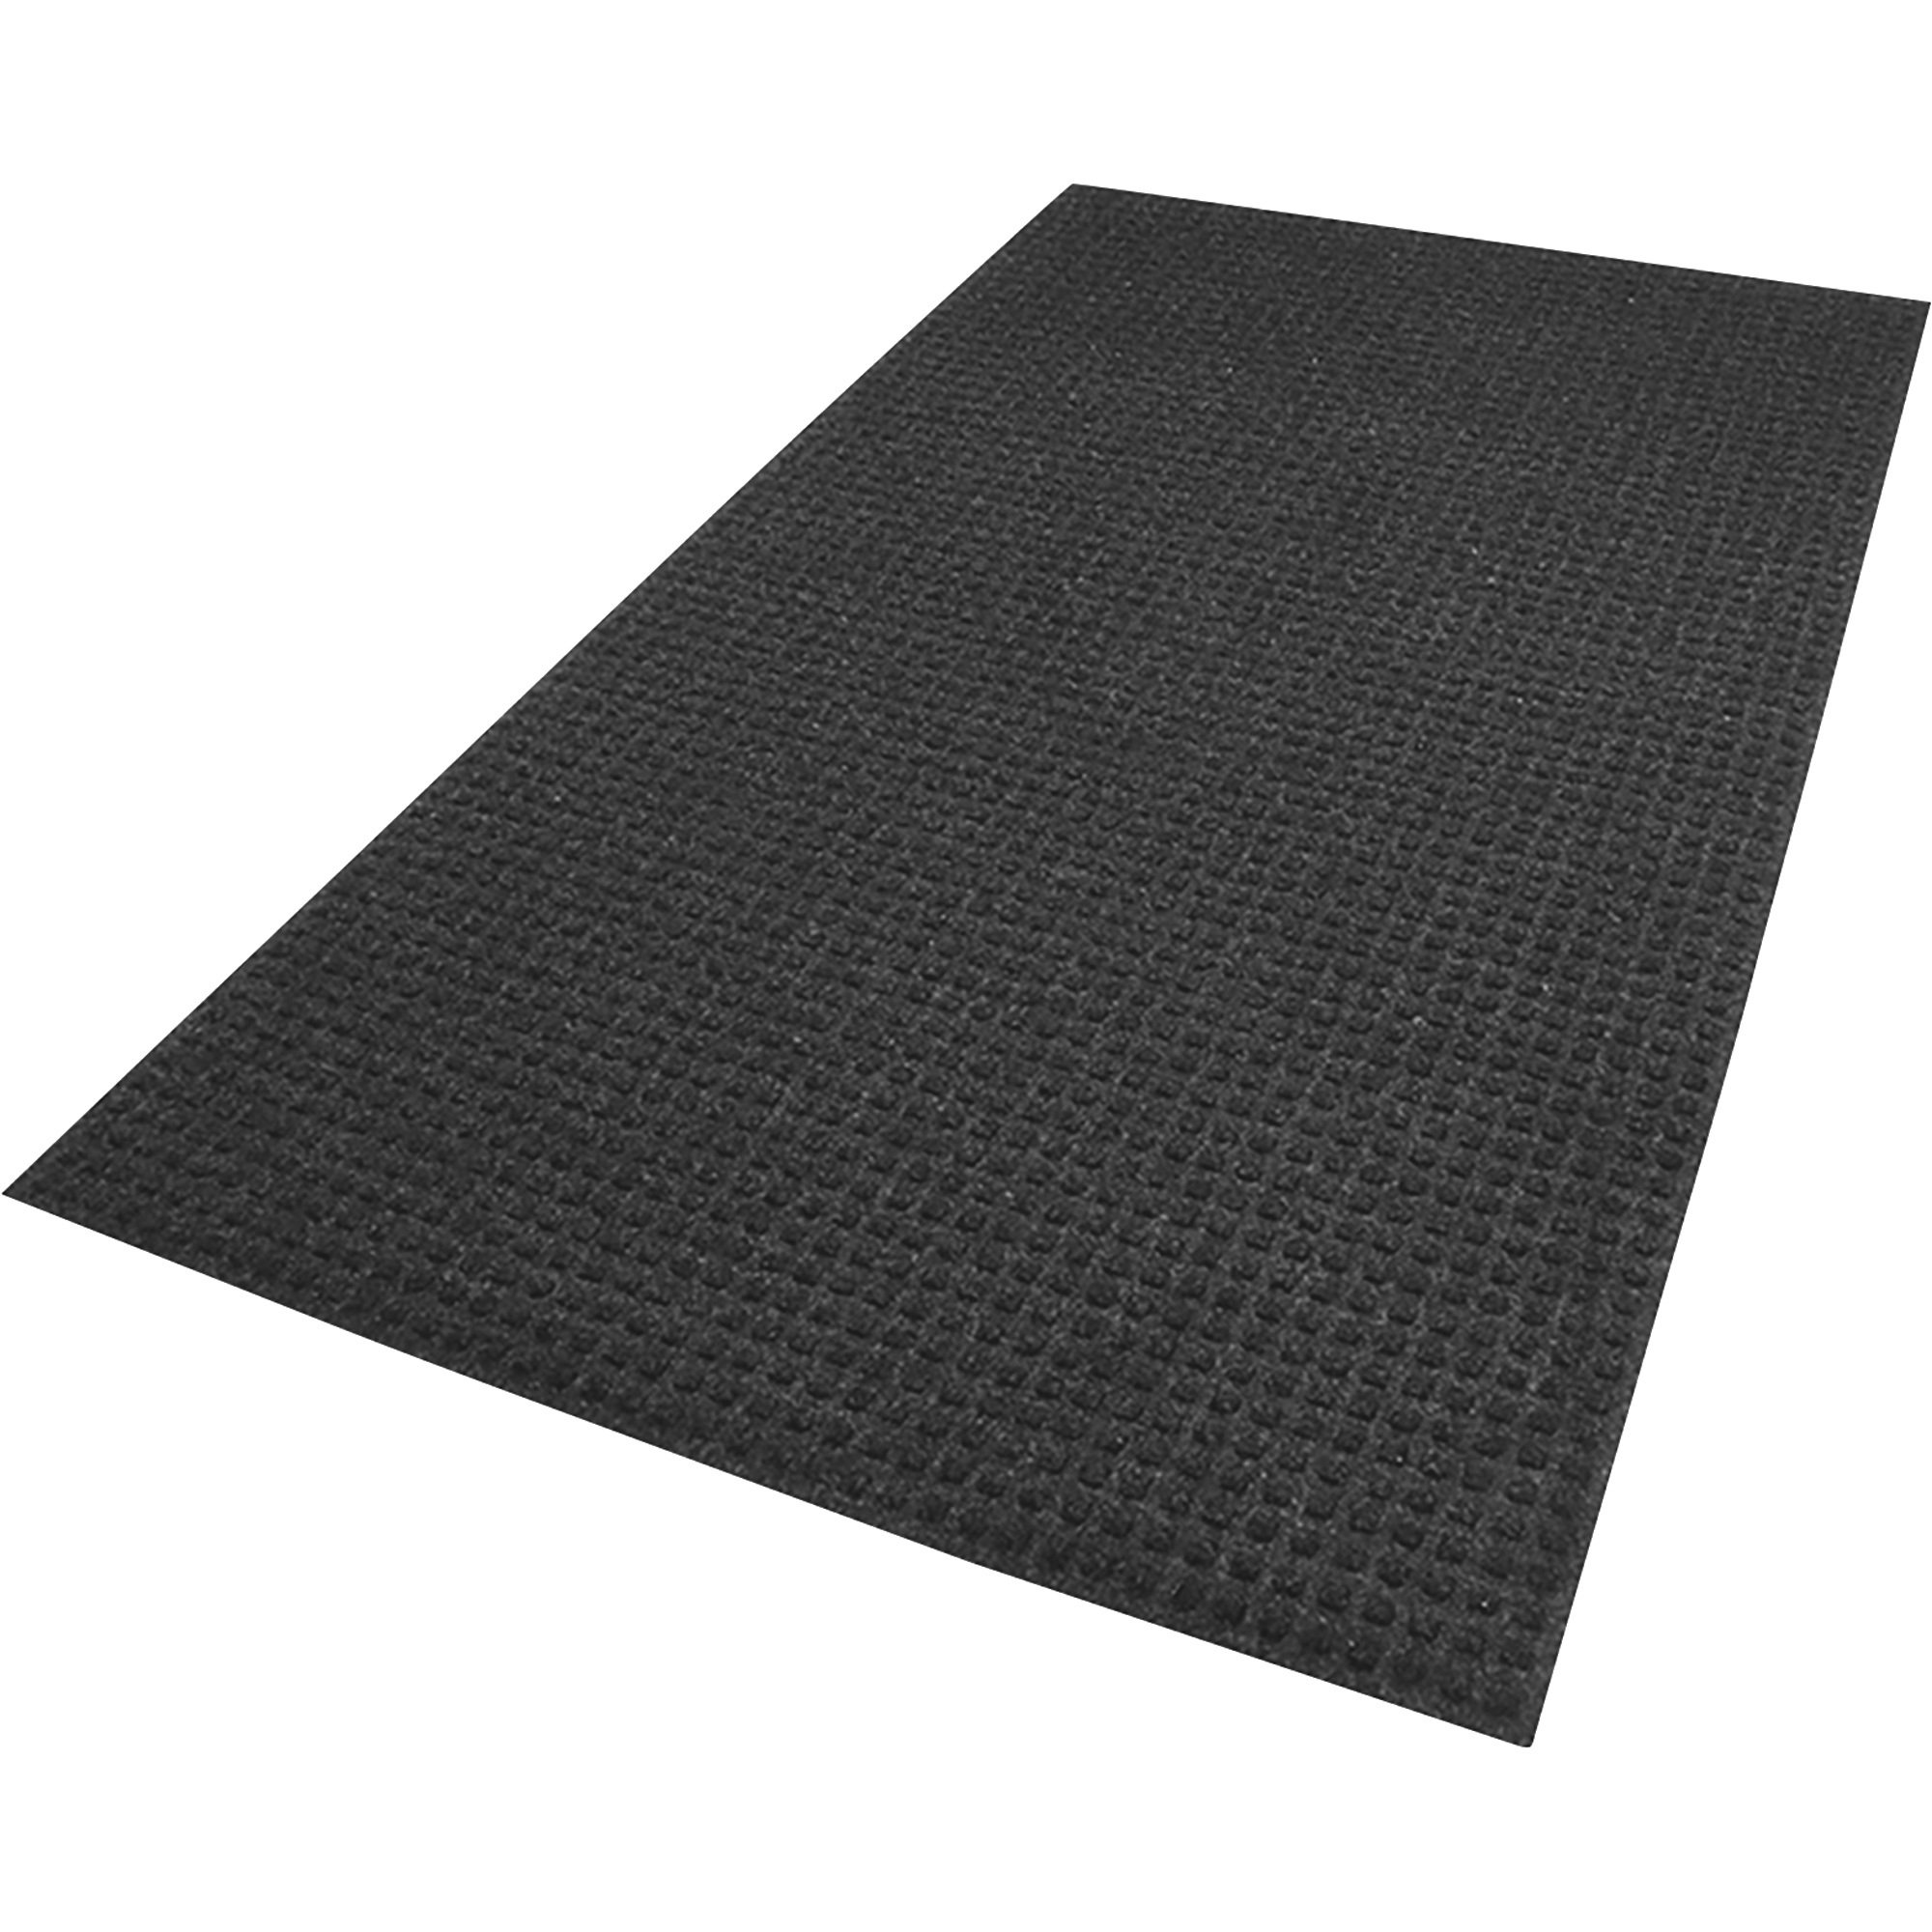 SuperScrape Floor Mat 3ft x 5ft Black